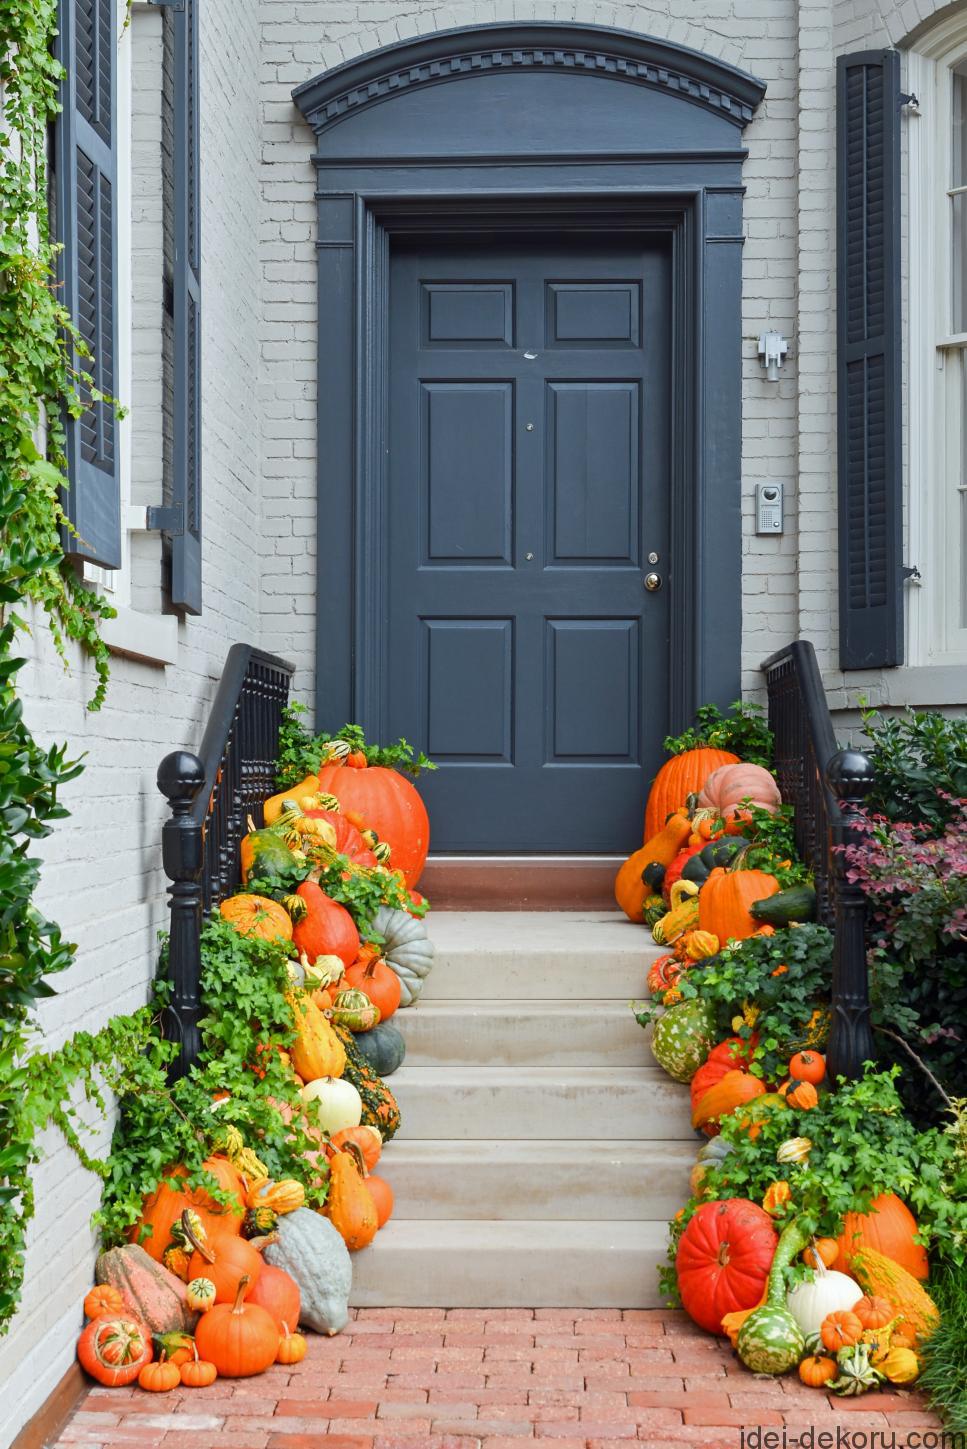 shutterstock-218353438_fall-pumpkin-front-porch-entry-jpg-rend-hgtvcom-966-1449